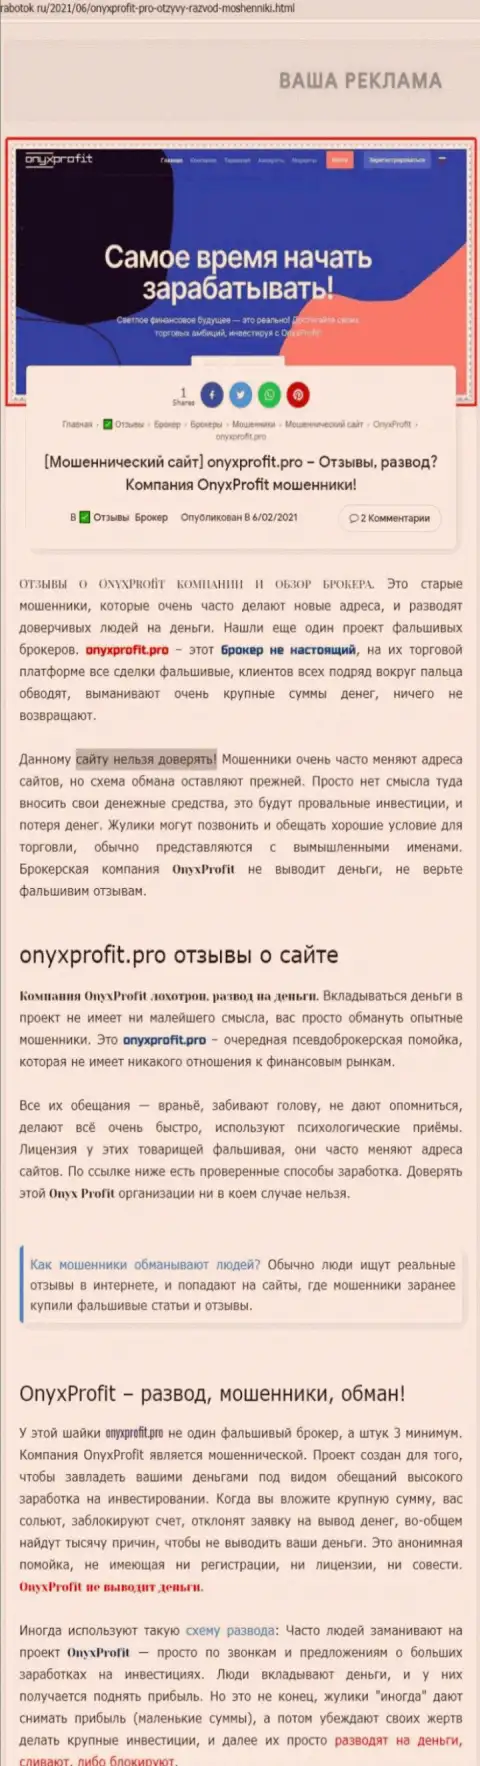 Хитрые уловки от компании OnyxProfit Pro, обзор неправомерных действий